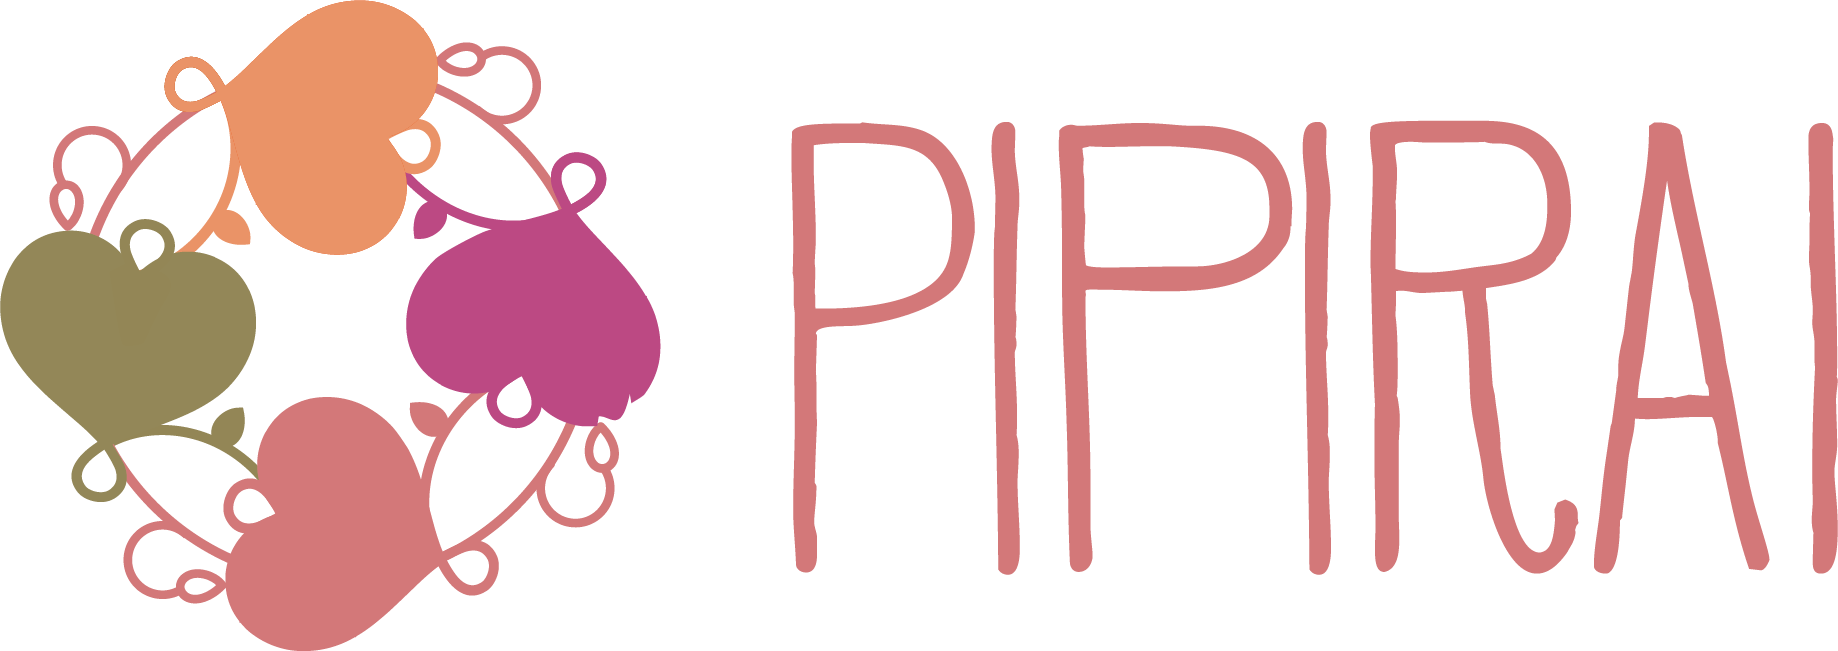 pipirai-logo-alternate